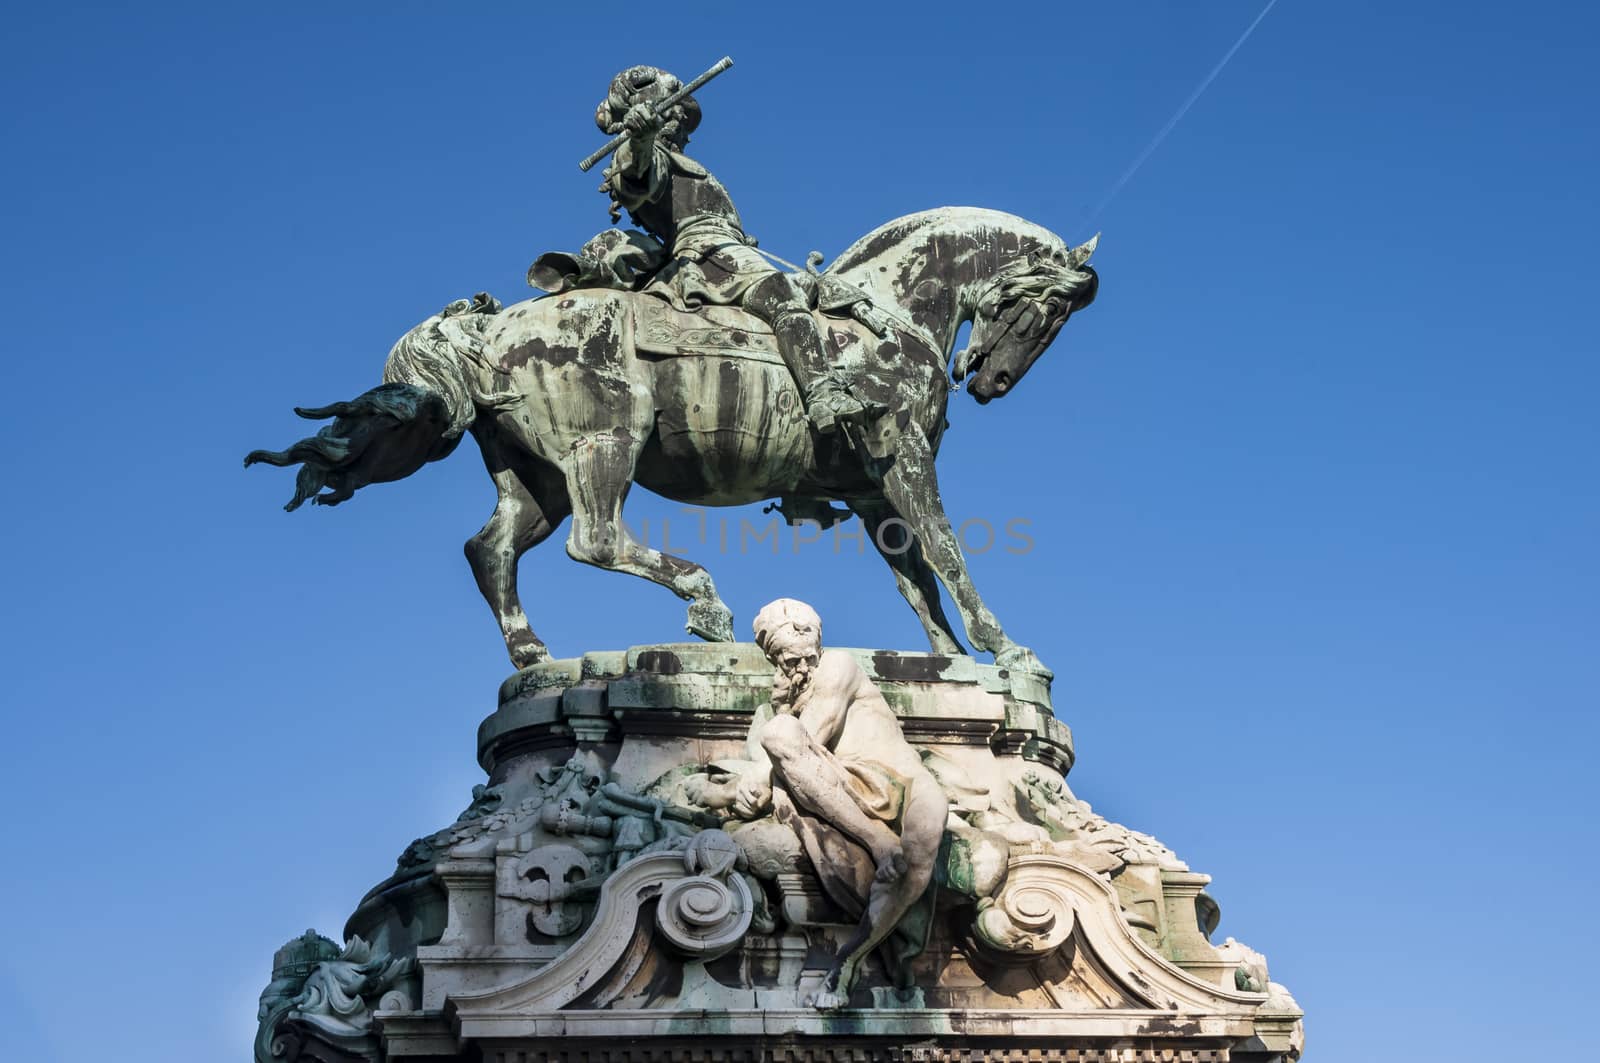 The equestrian statue by edella